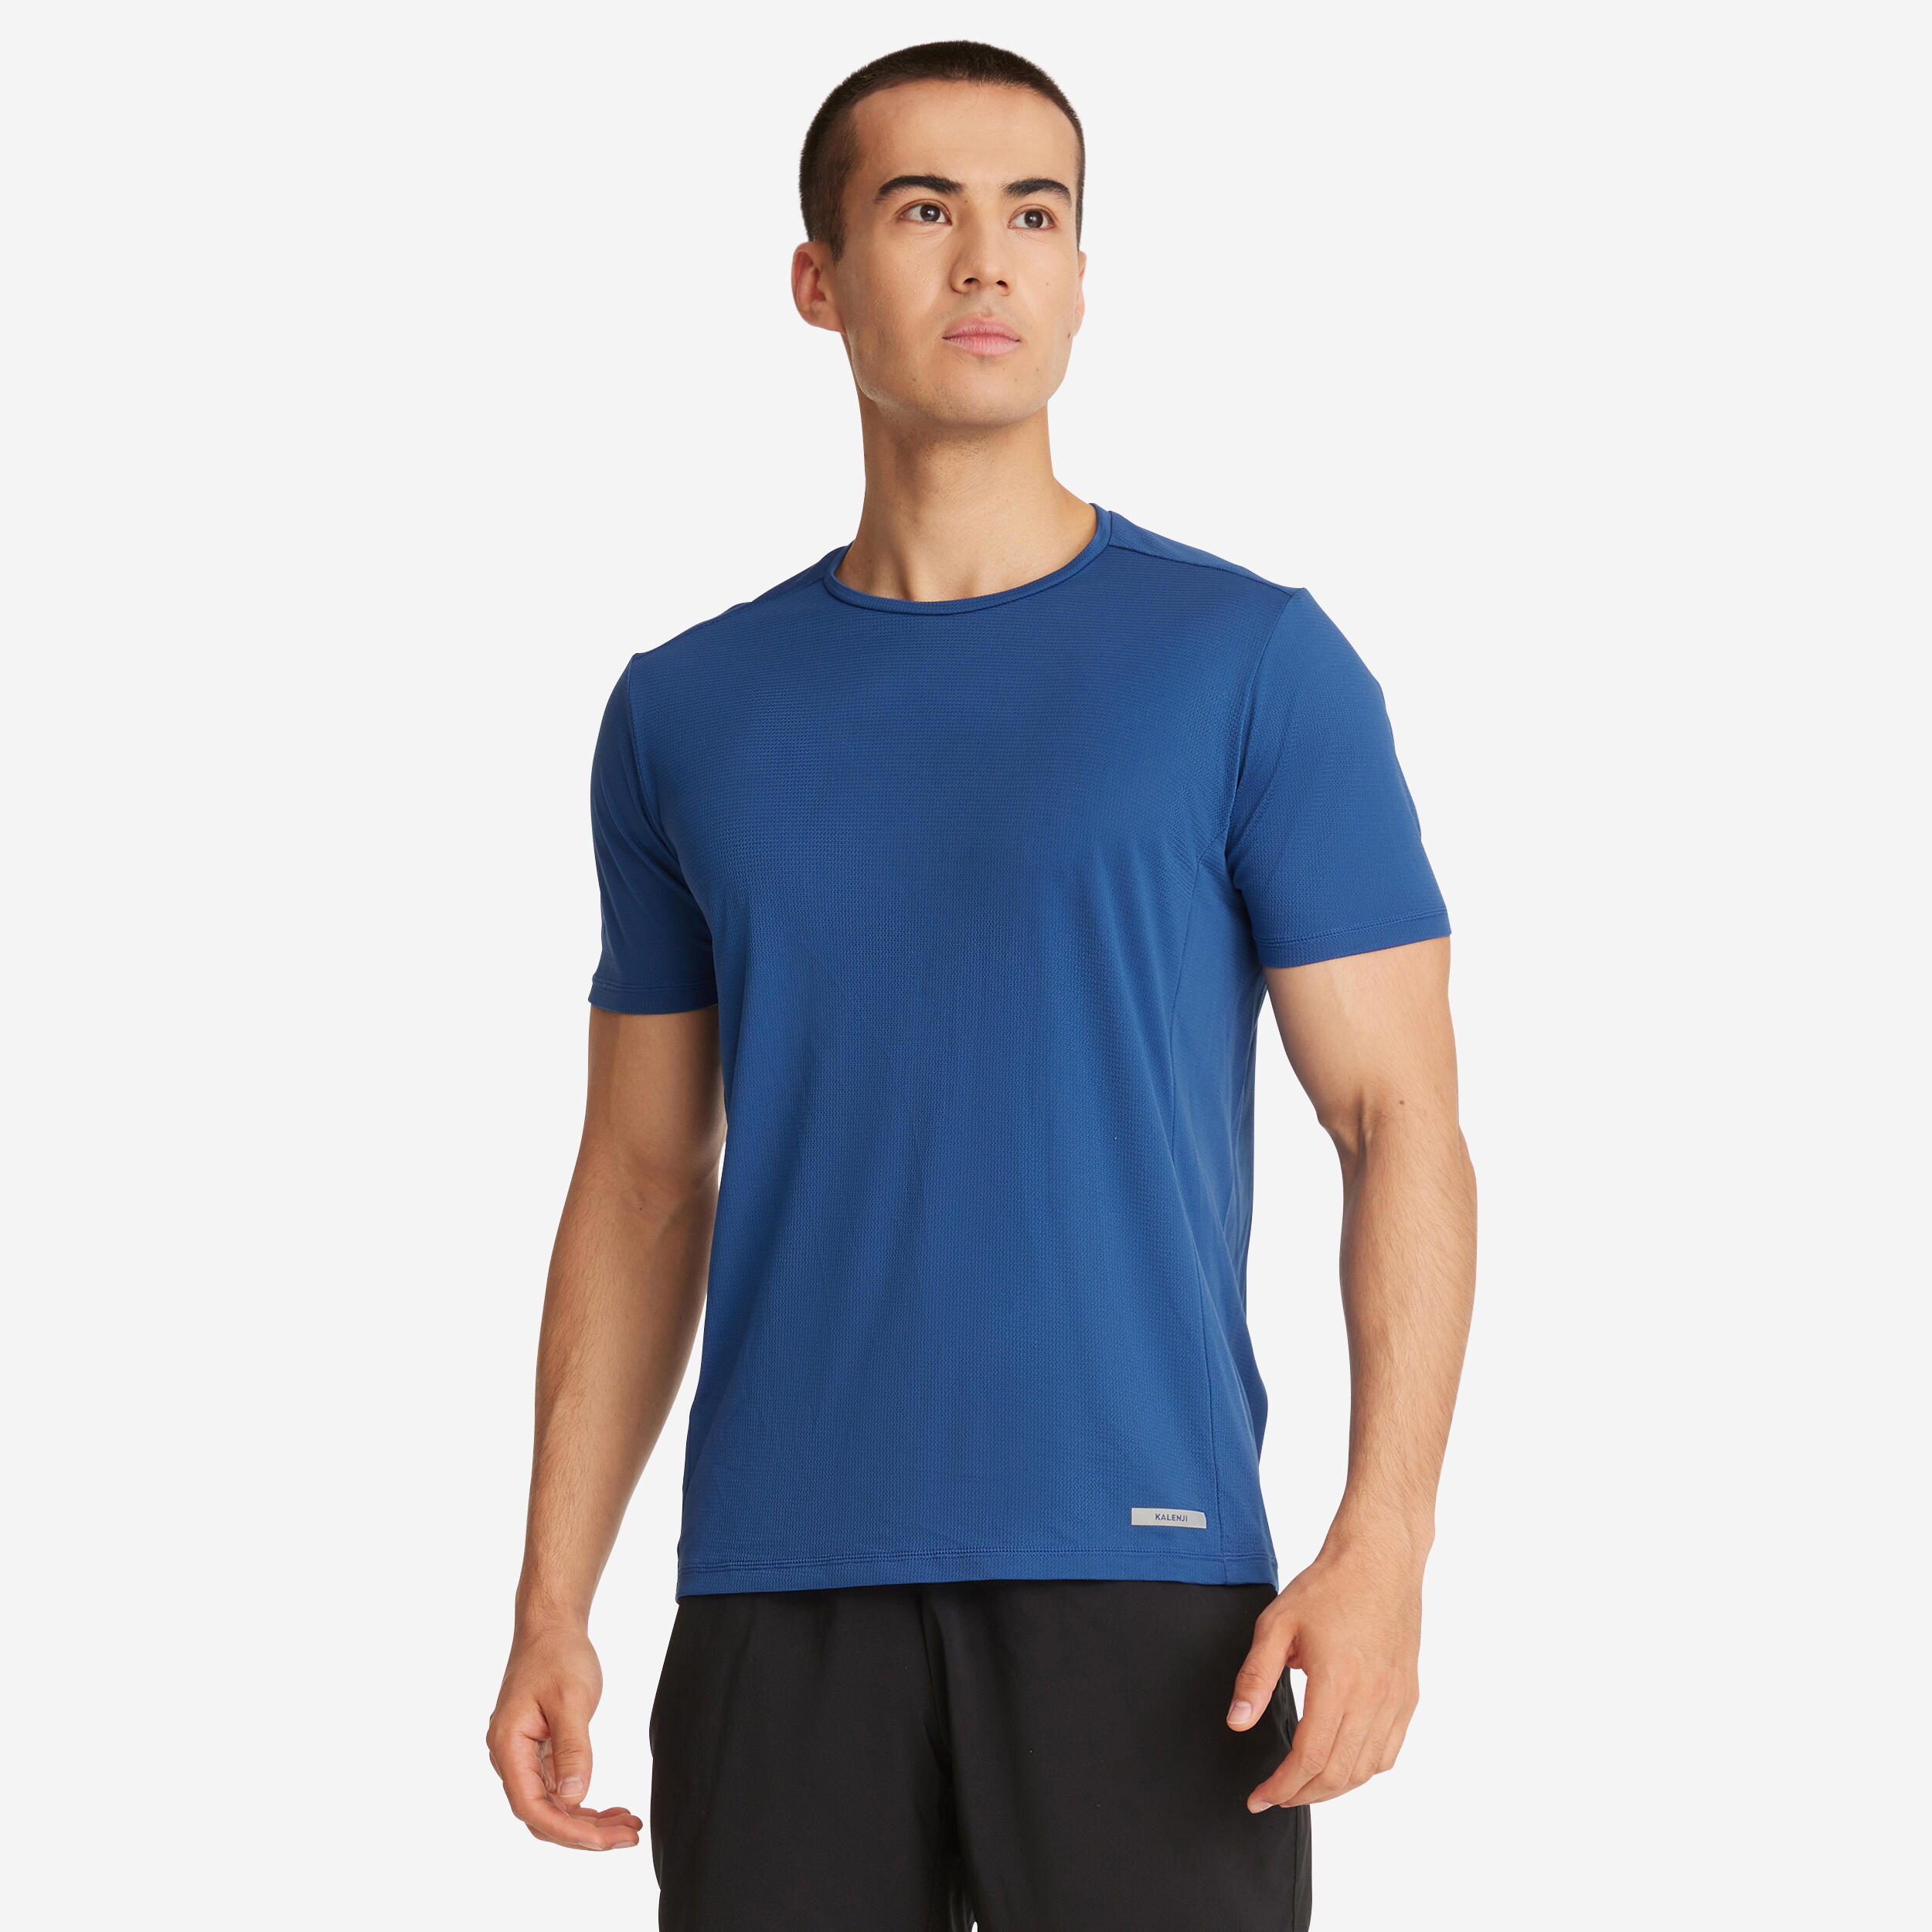 KALENJI T-Shirt De Running Respirant Homme - Kiprun 100 Dry Bleu